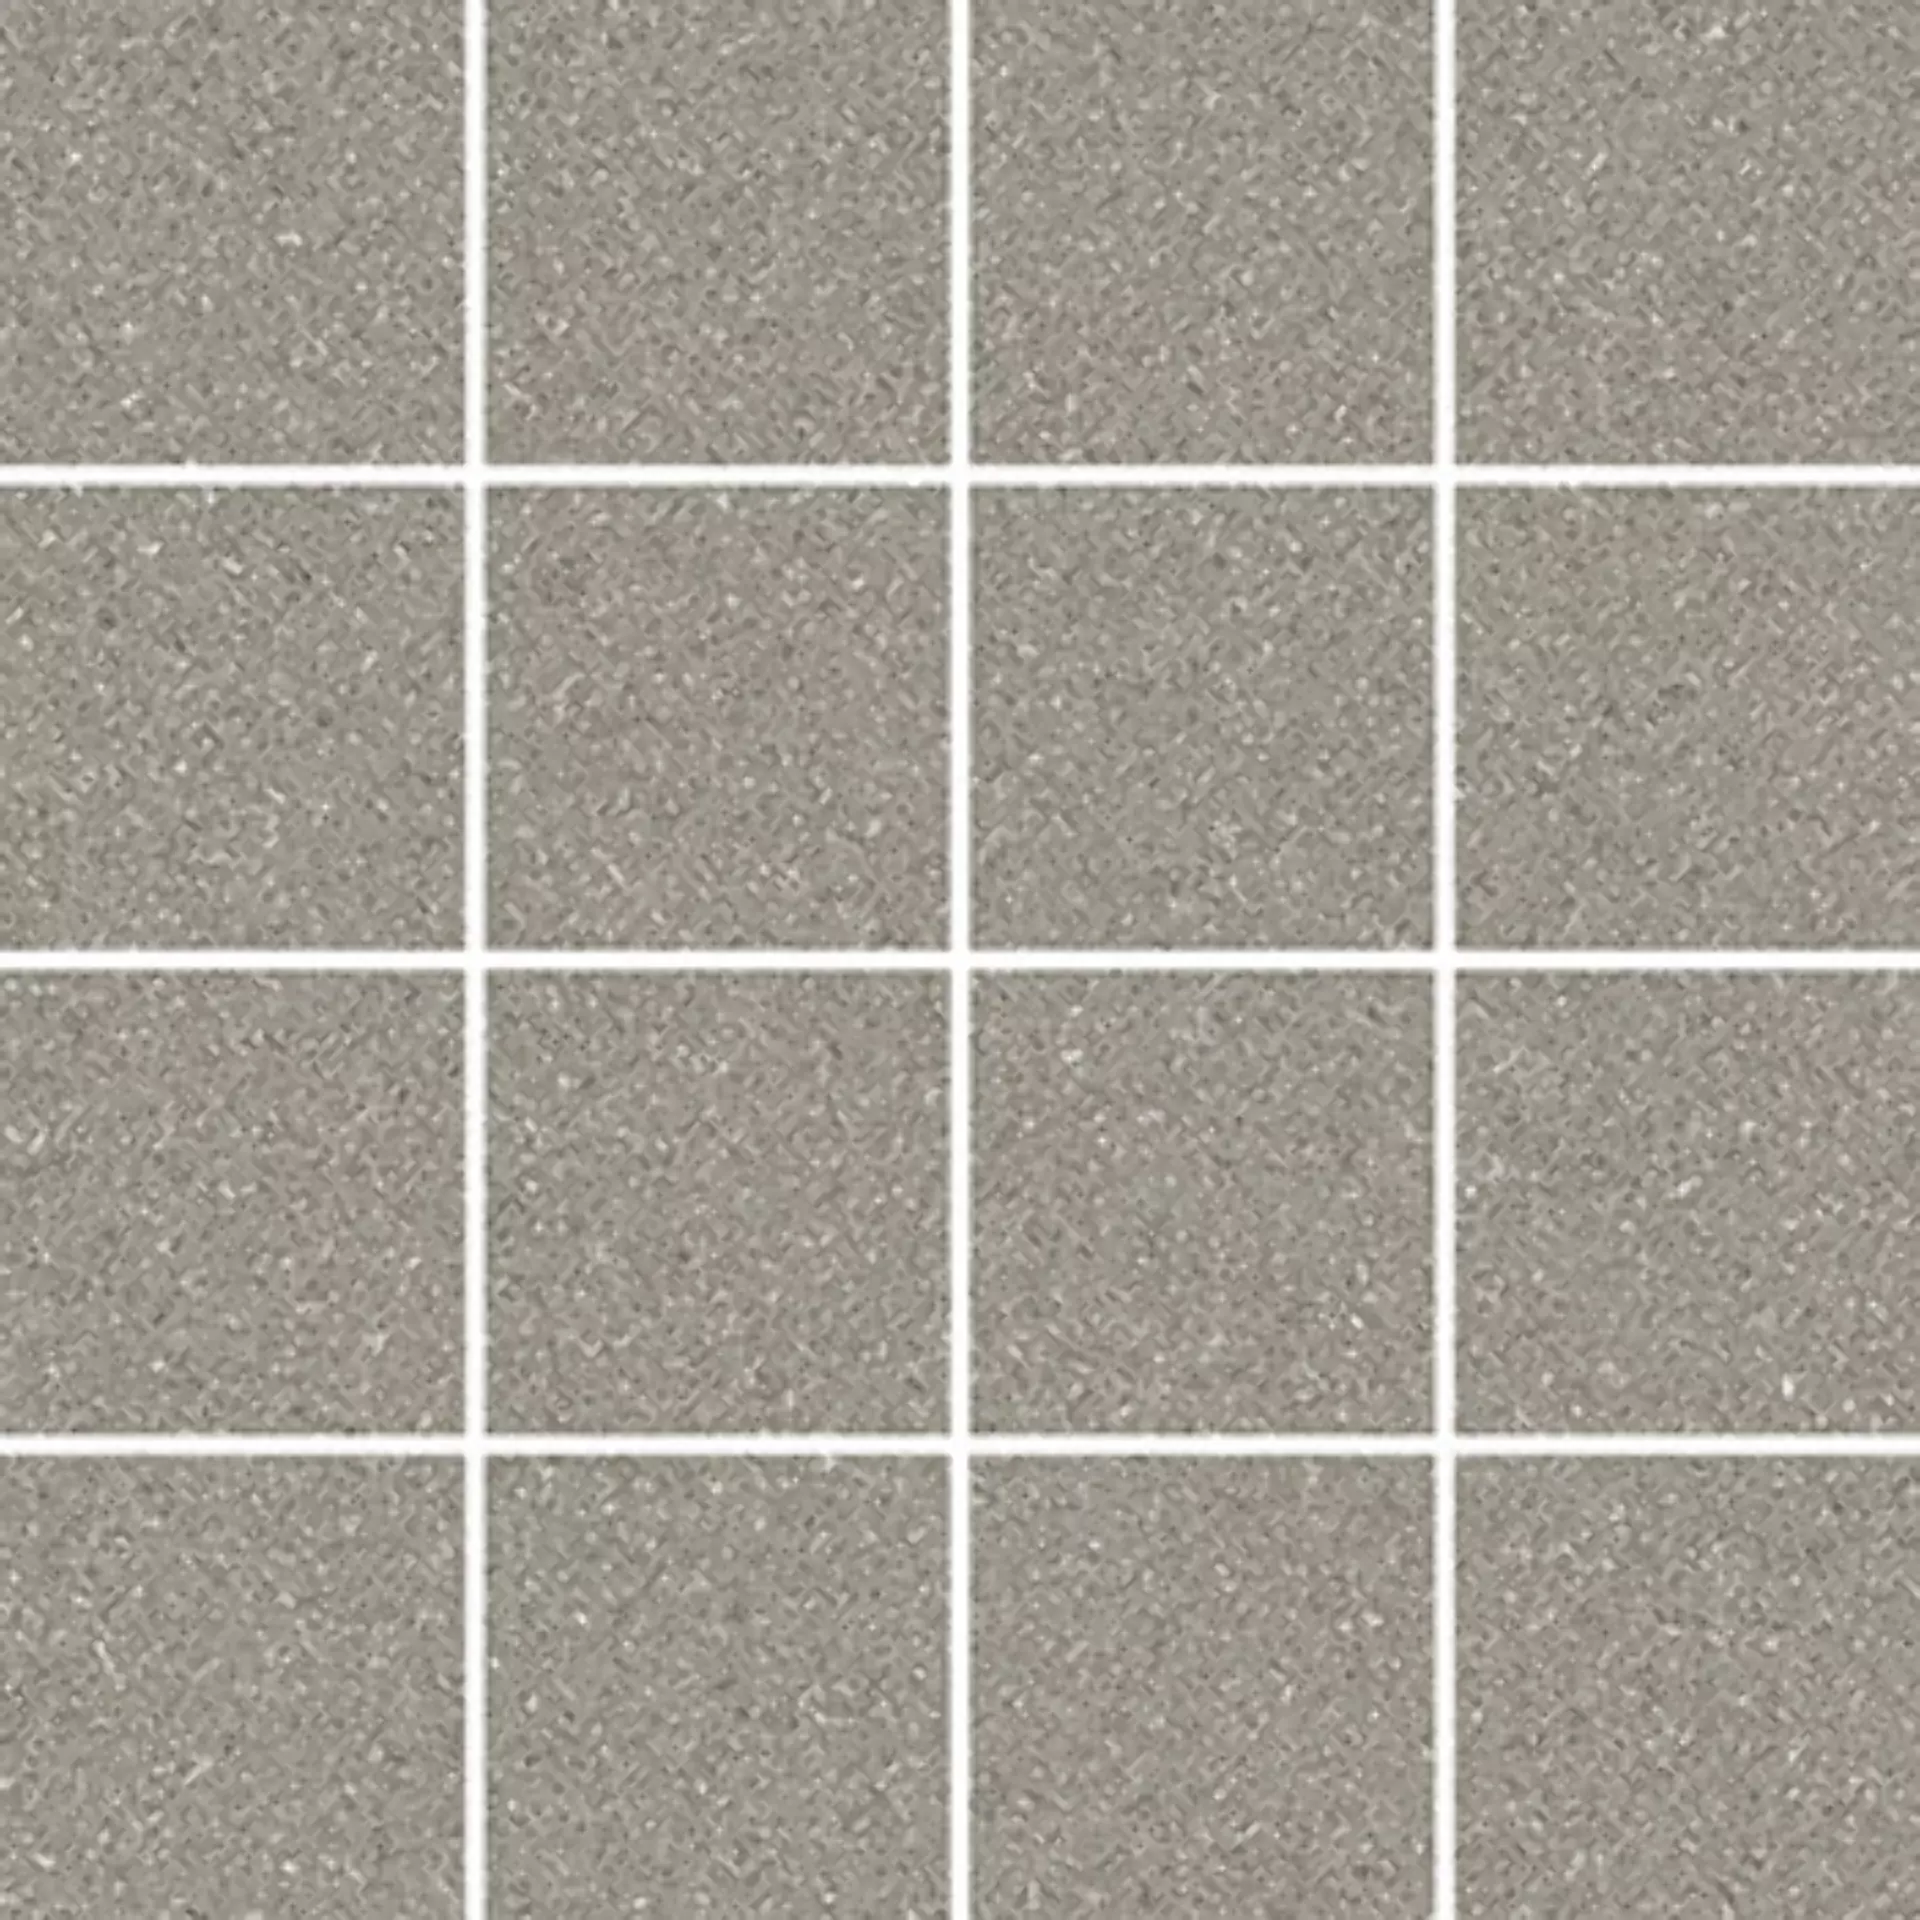 Wandfliese,Bodenfliese Villeroy & Boch Pure Line 2.0 Cement Grey Matt Cement Grey 2013-UL61 matt 7,5x7,5cm Mosaik (7,5x7,5) rektifiziert 12mm